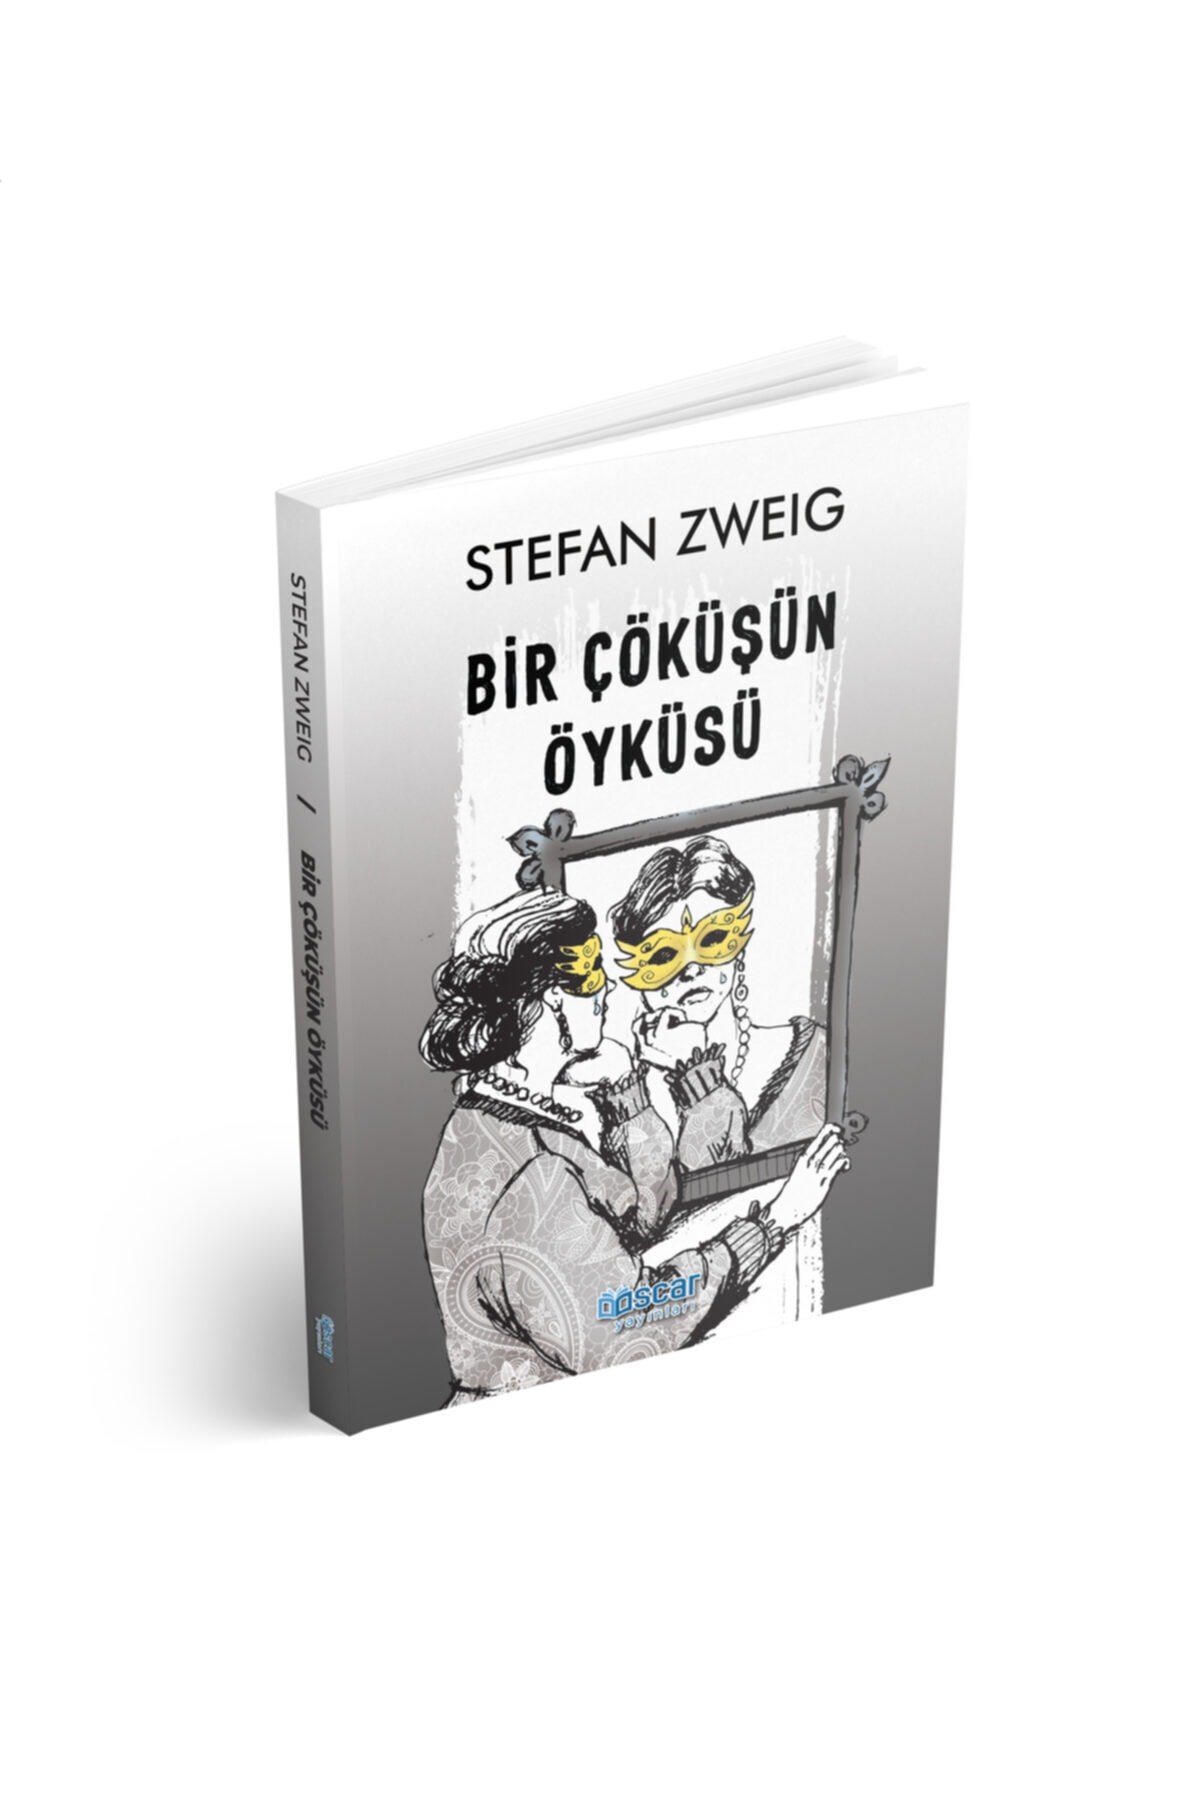 Bir Çöküşün Öyküsü - Stefan Zweig | HarikaKitap.com - Kitaba Ulaşmanın En  Kolay Yolu | Paydos Yayın Grubu